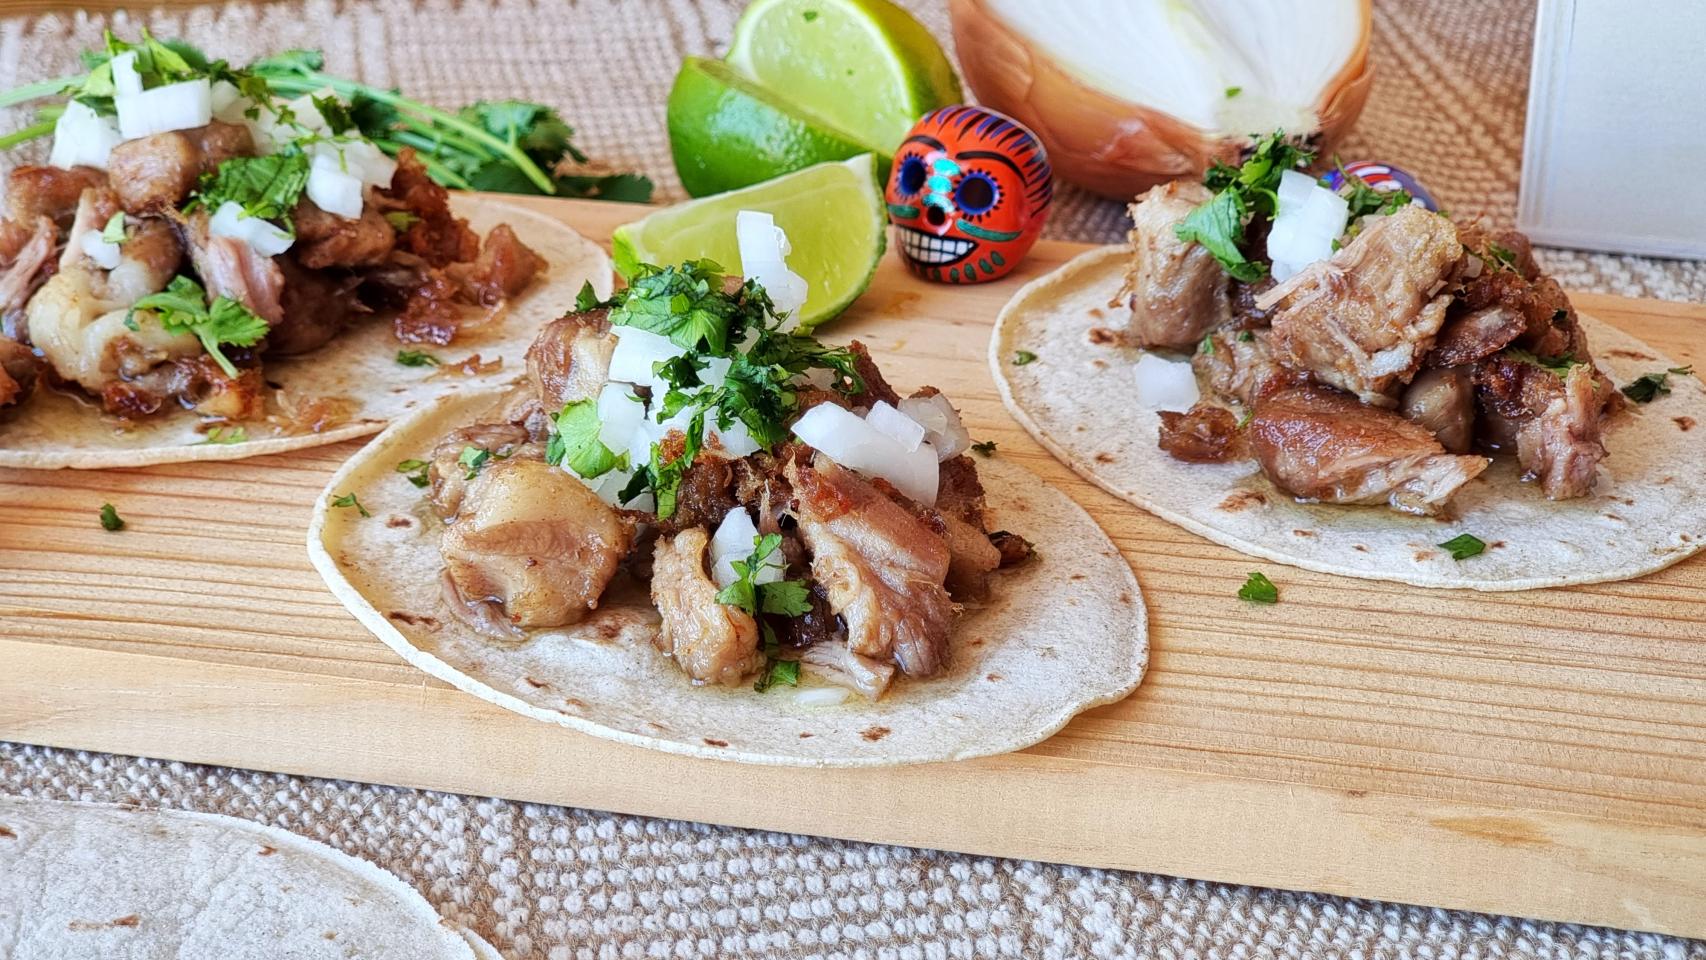 Tacos de carnitas de cerdo, una de las recetas más populares en México